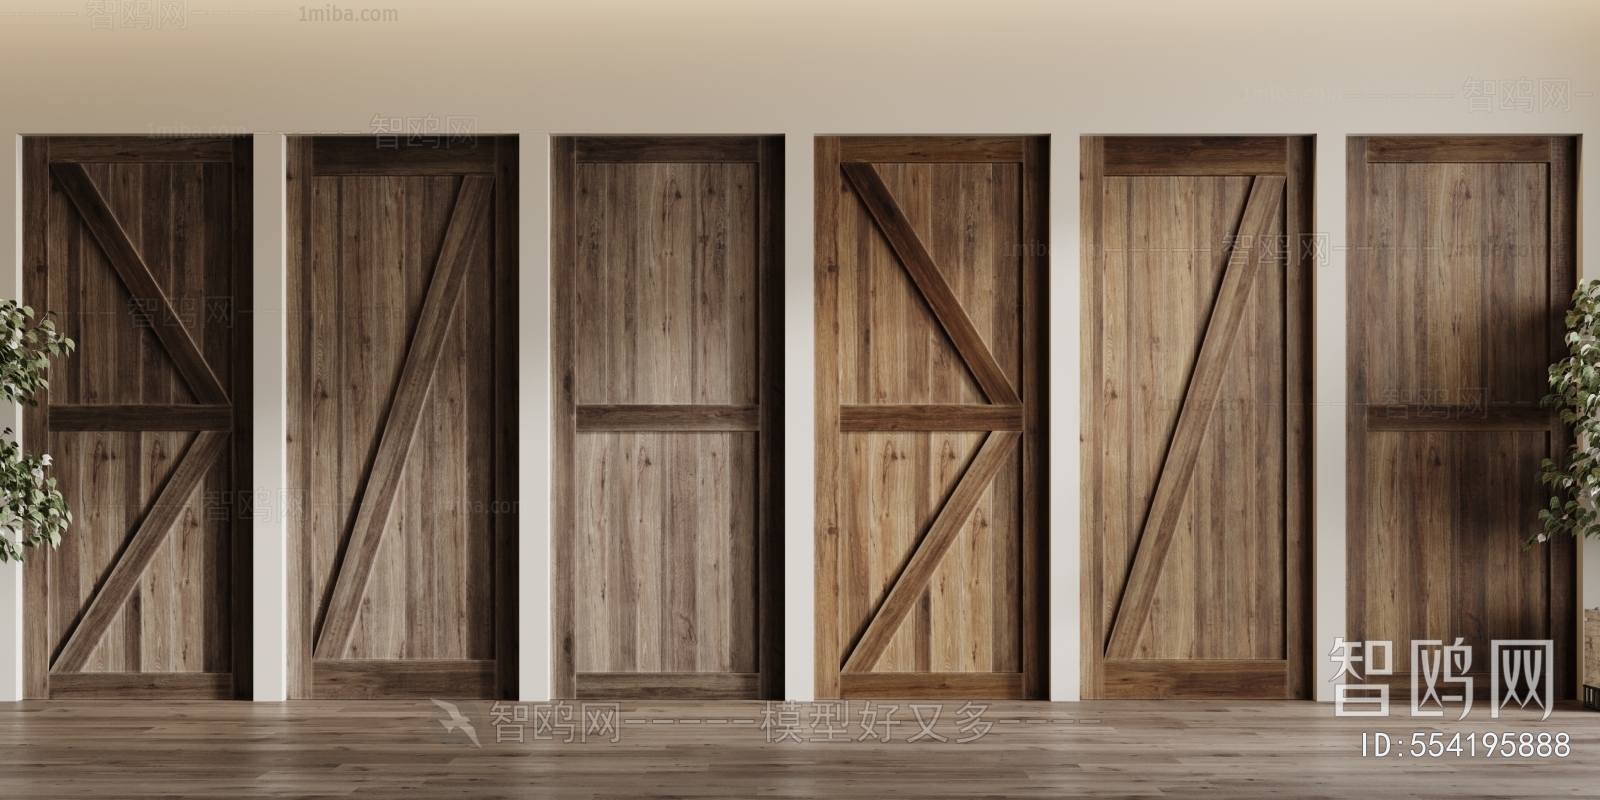 Industrial Style Solid Wood Door